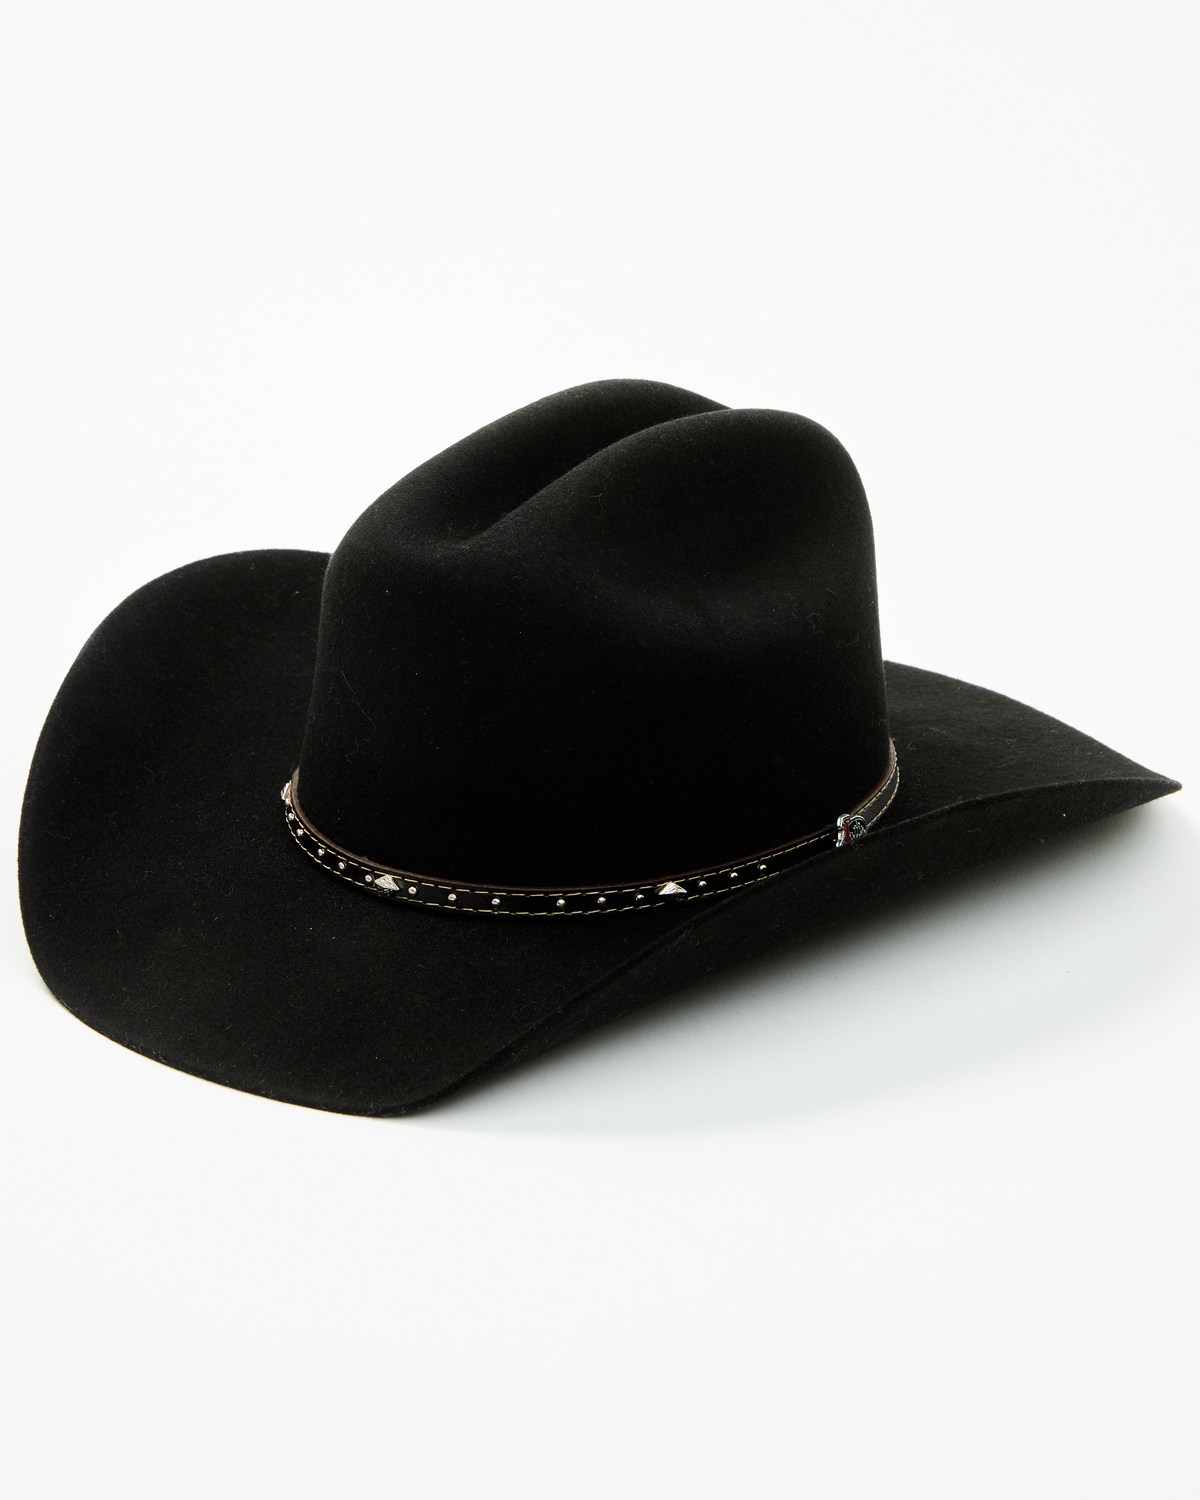 Justin Black Hills Jr 2X Felt Cowboy Hat